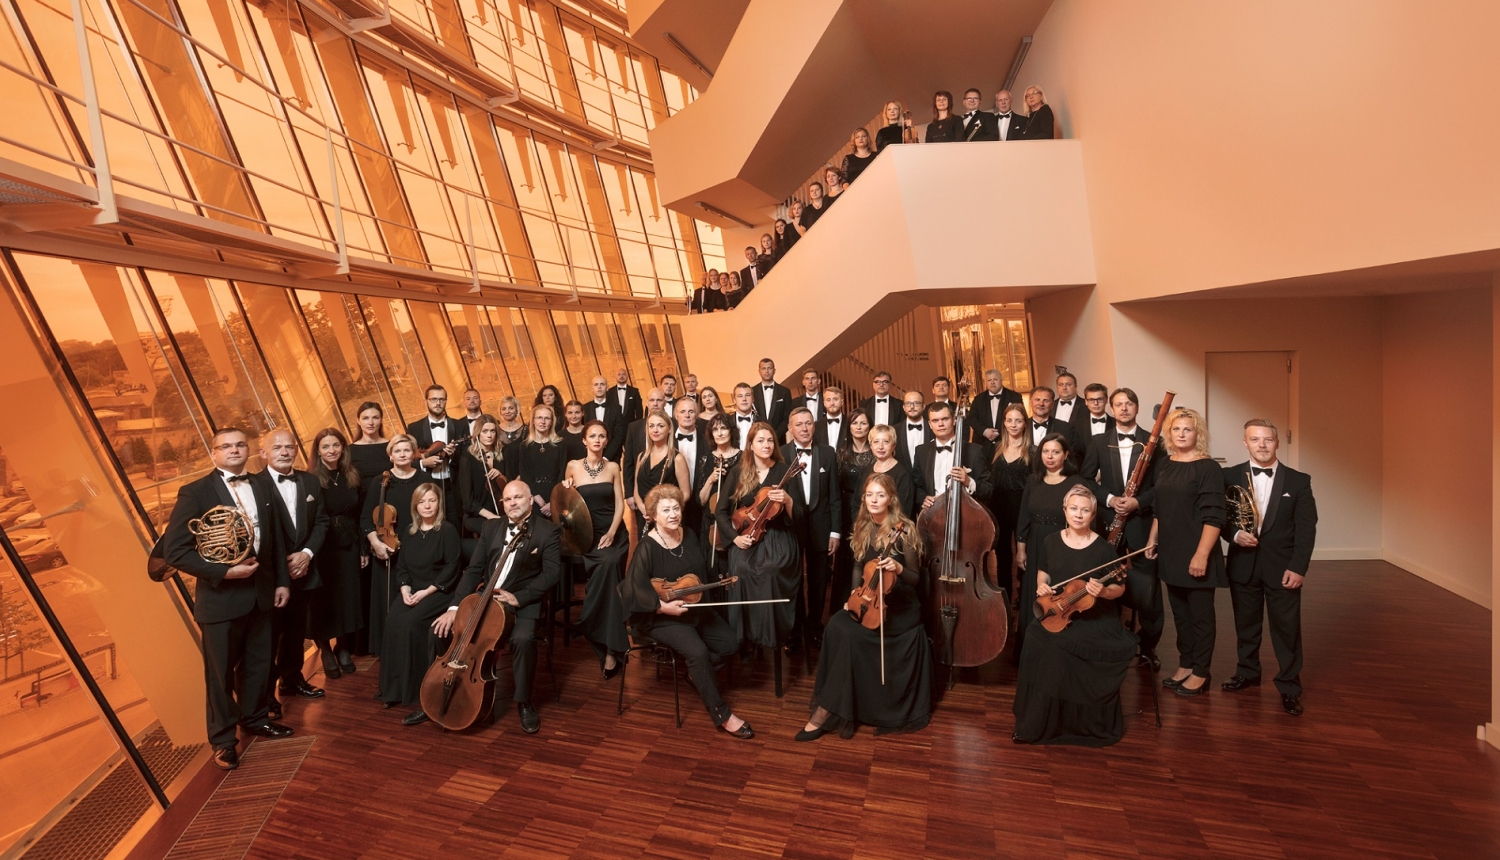 Liepājas simfoniskais orķestris, foto: Reinis Hofmanis.